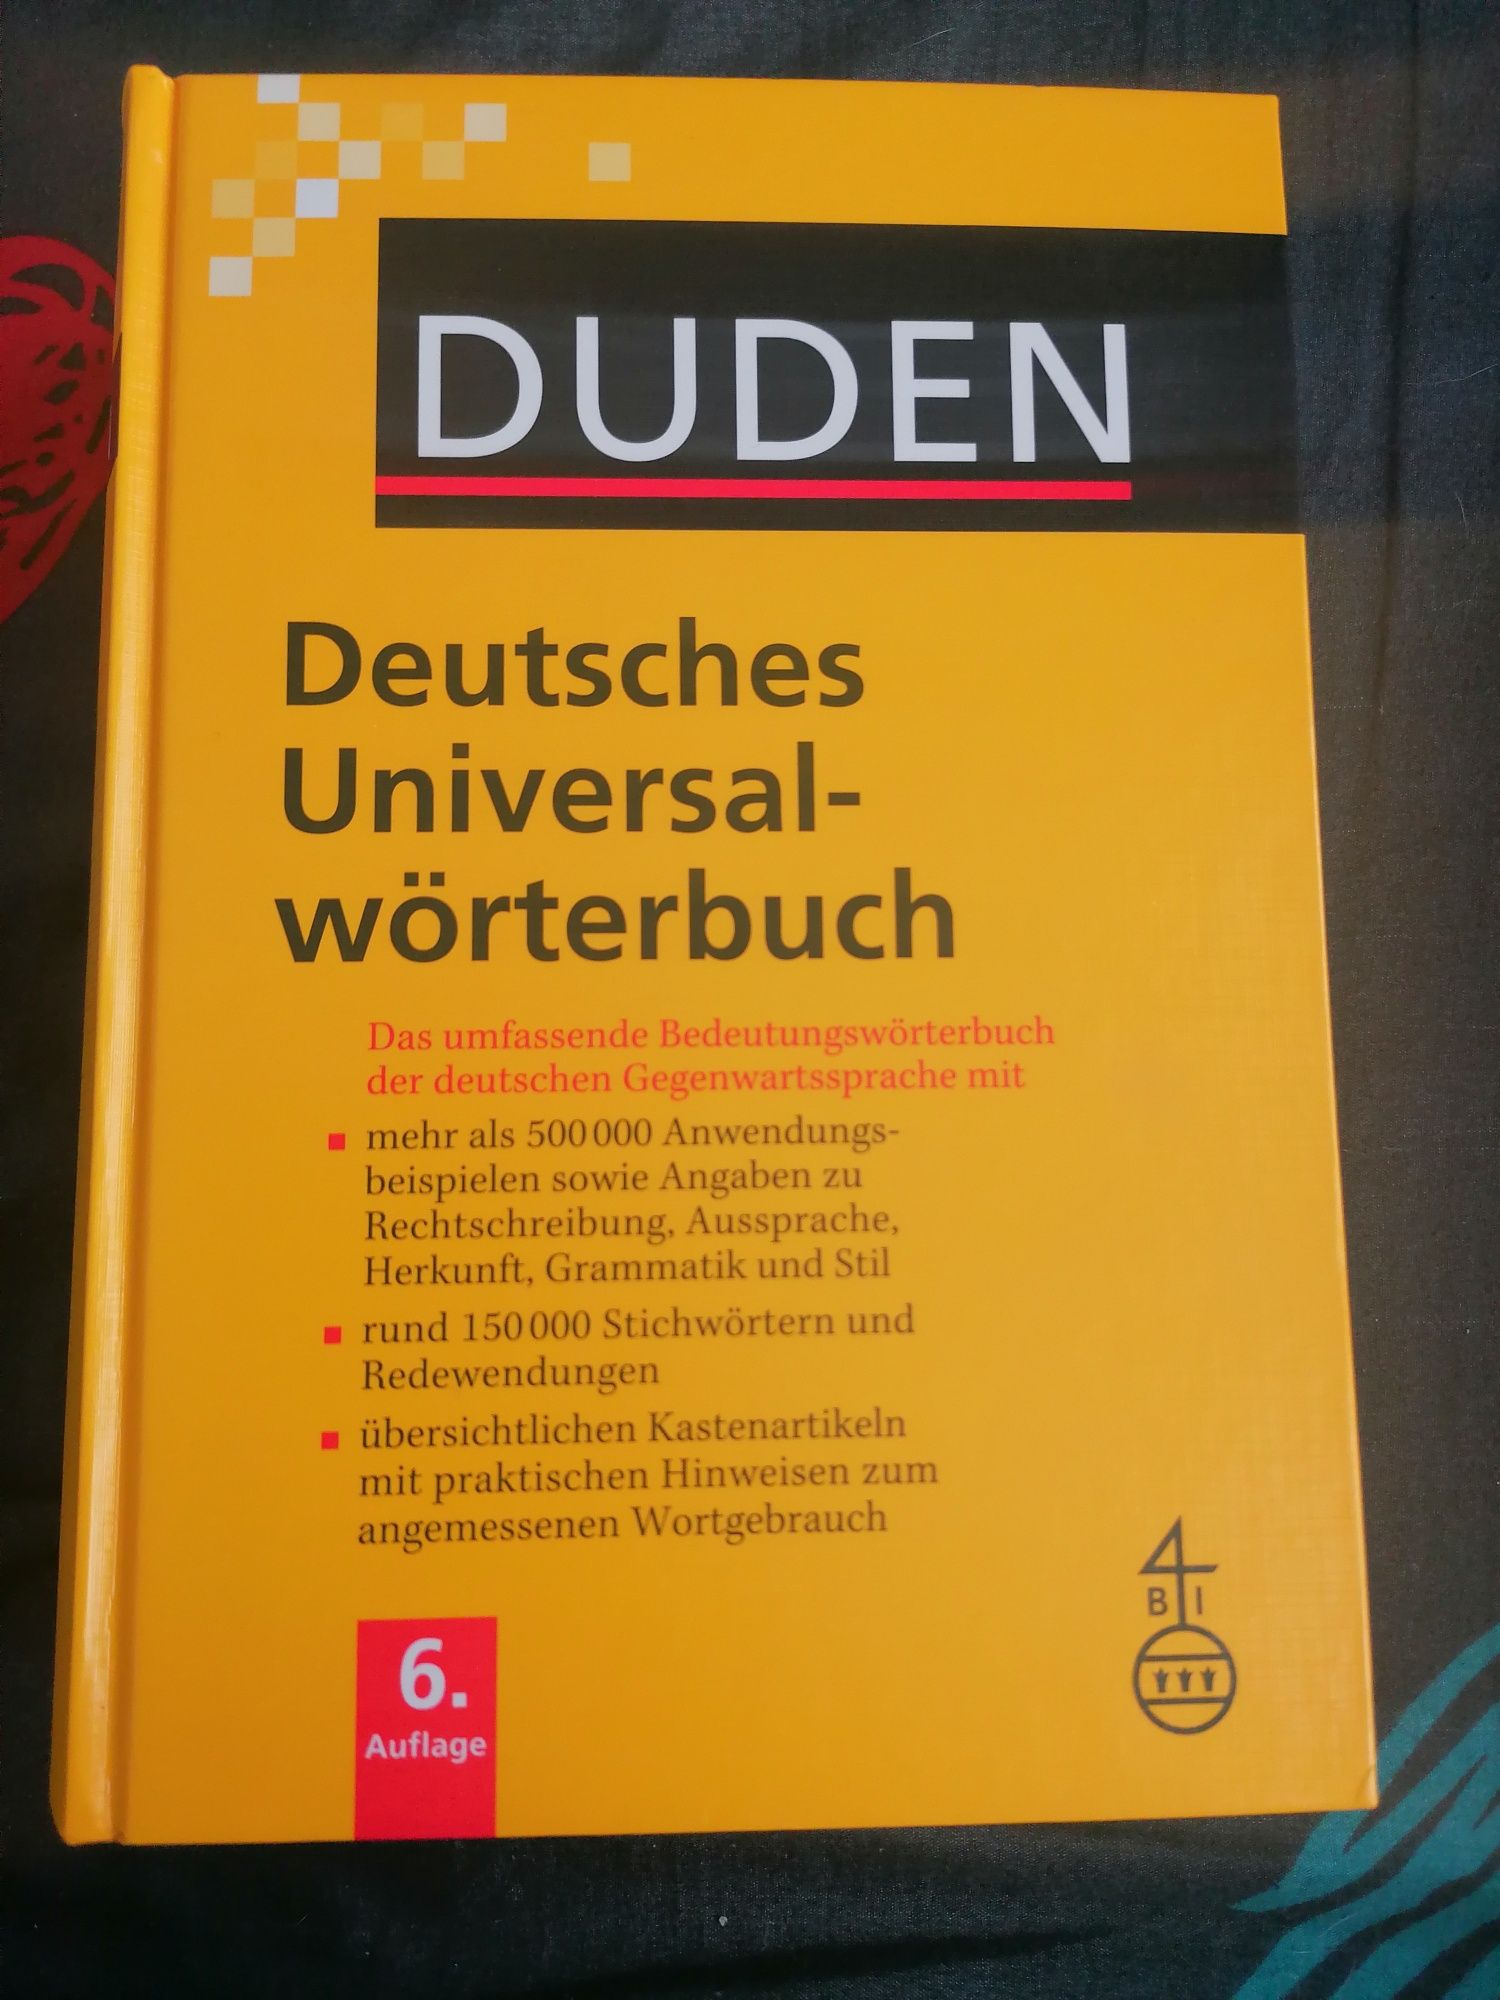 Duden słownik niemiecko-niemiecki